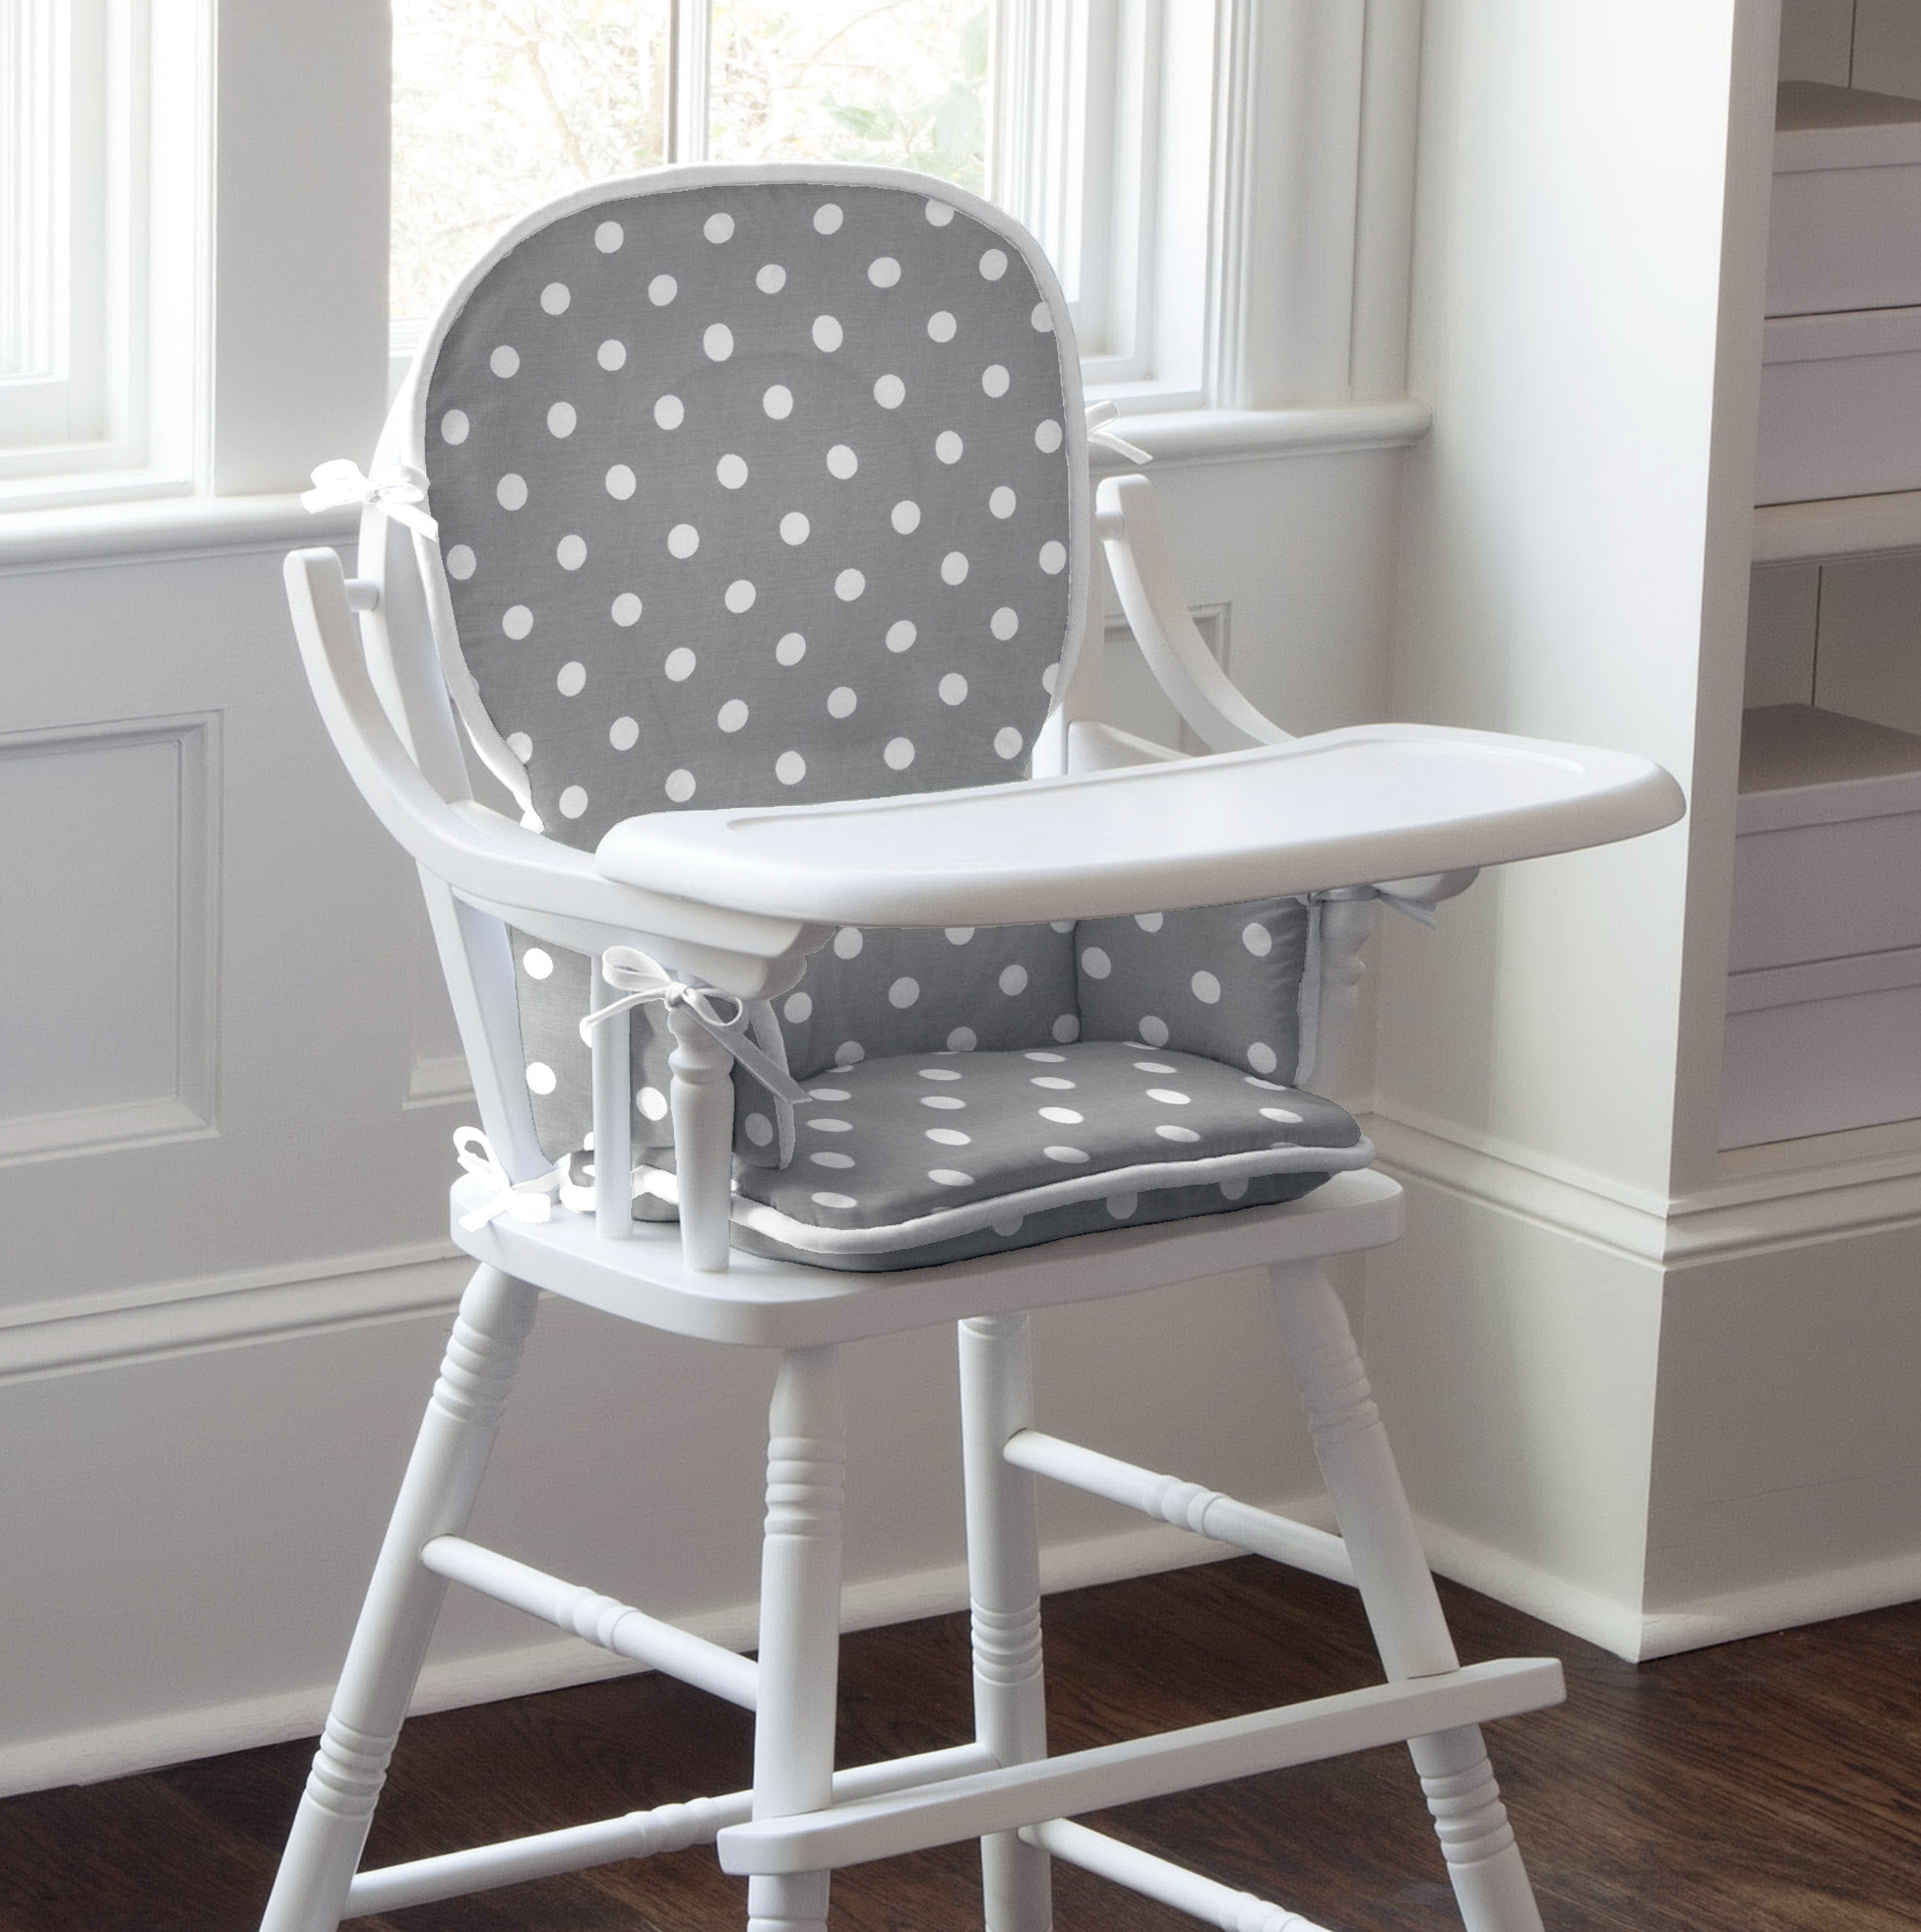 Wooden High Chair Cushion Pattern | Home Design Ideas